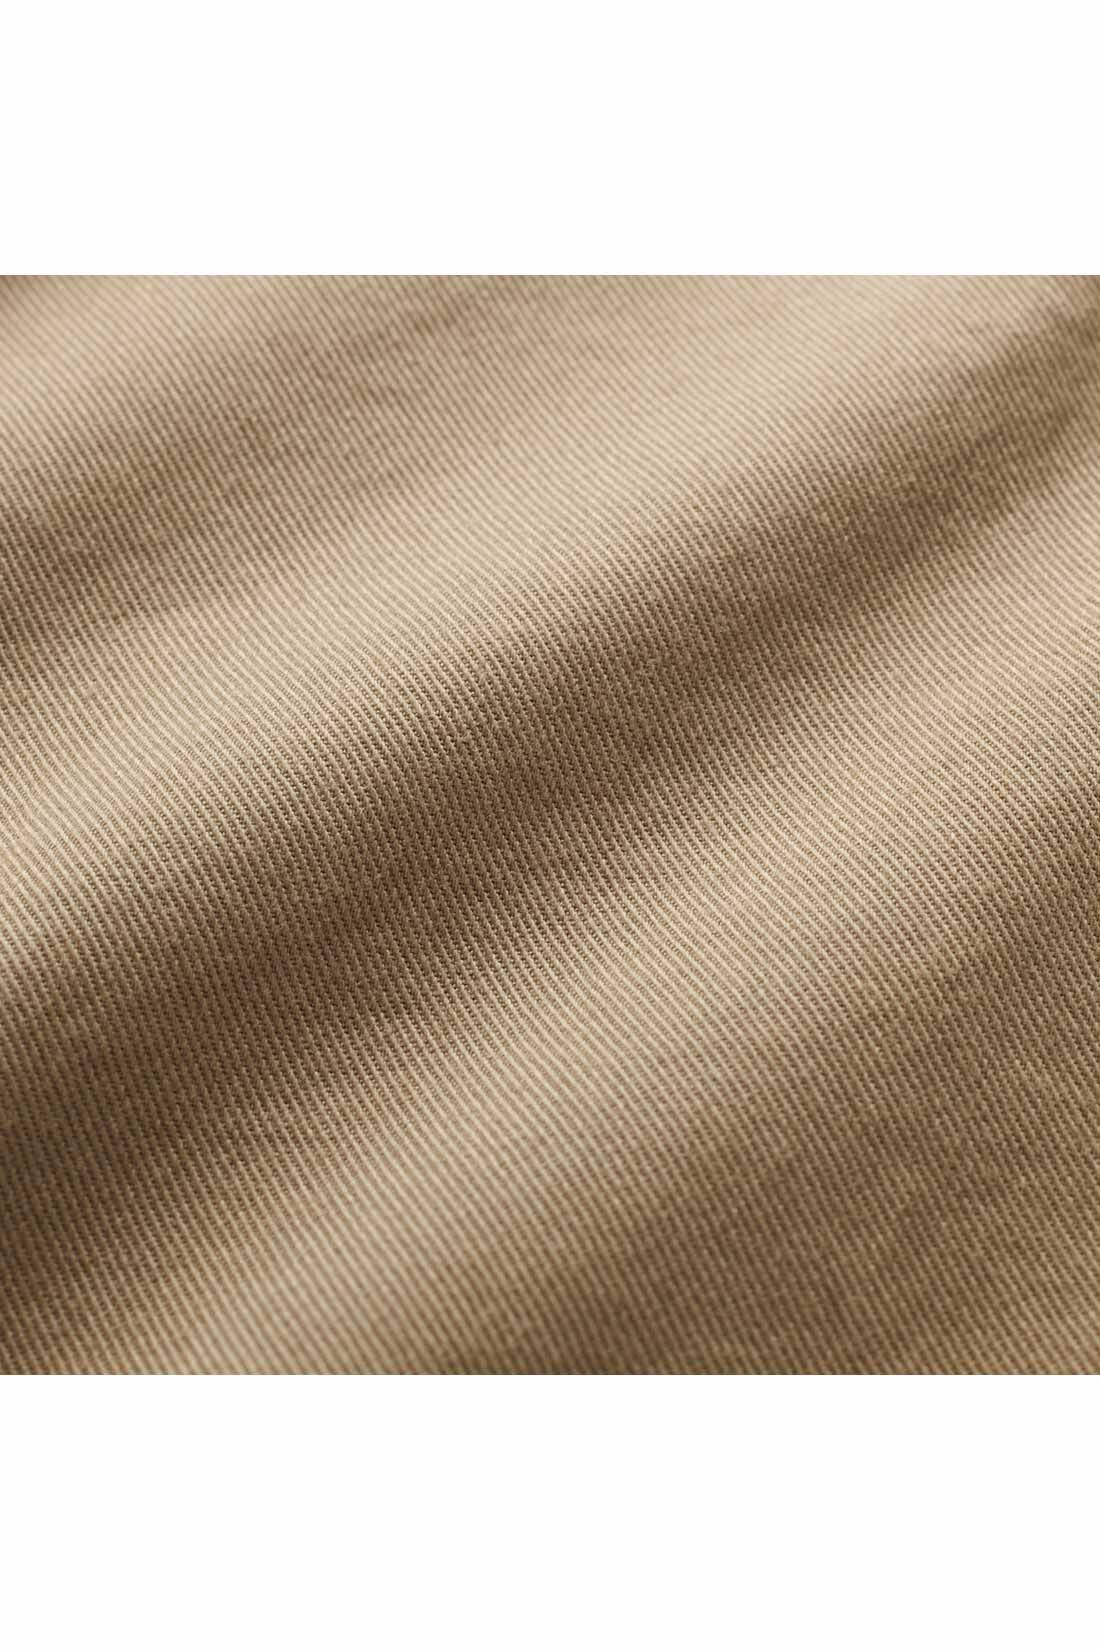 THREE FIFTY STANDARD|THREE FIFTY STANDARD　すっきりペグパンツ〈ベージュ〉|太番手の綾織りでふくらみのある素材は、年中使える質感。